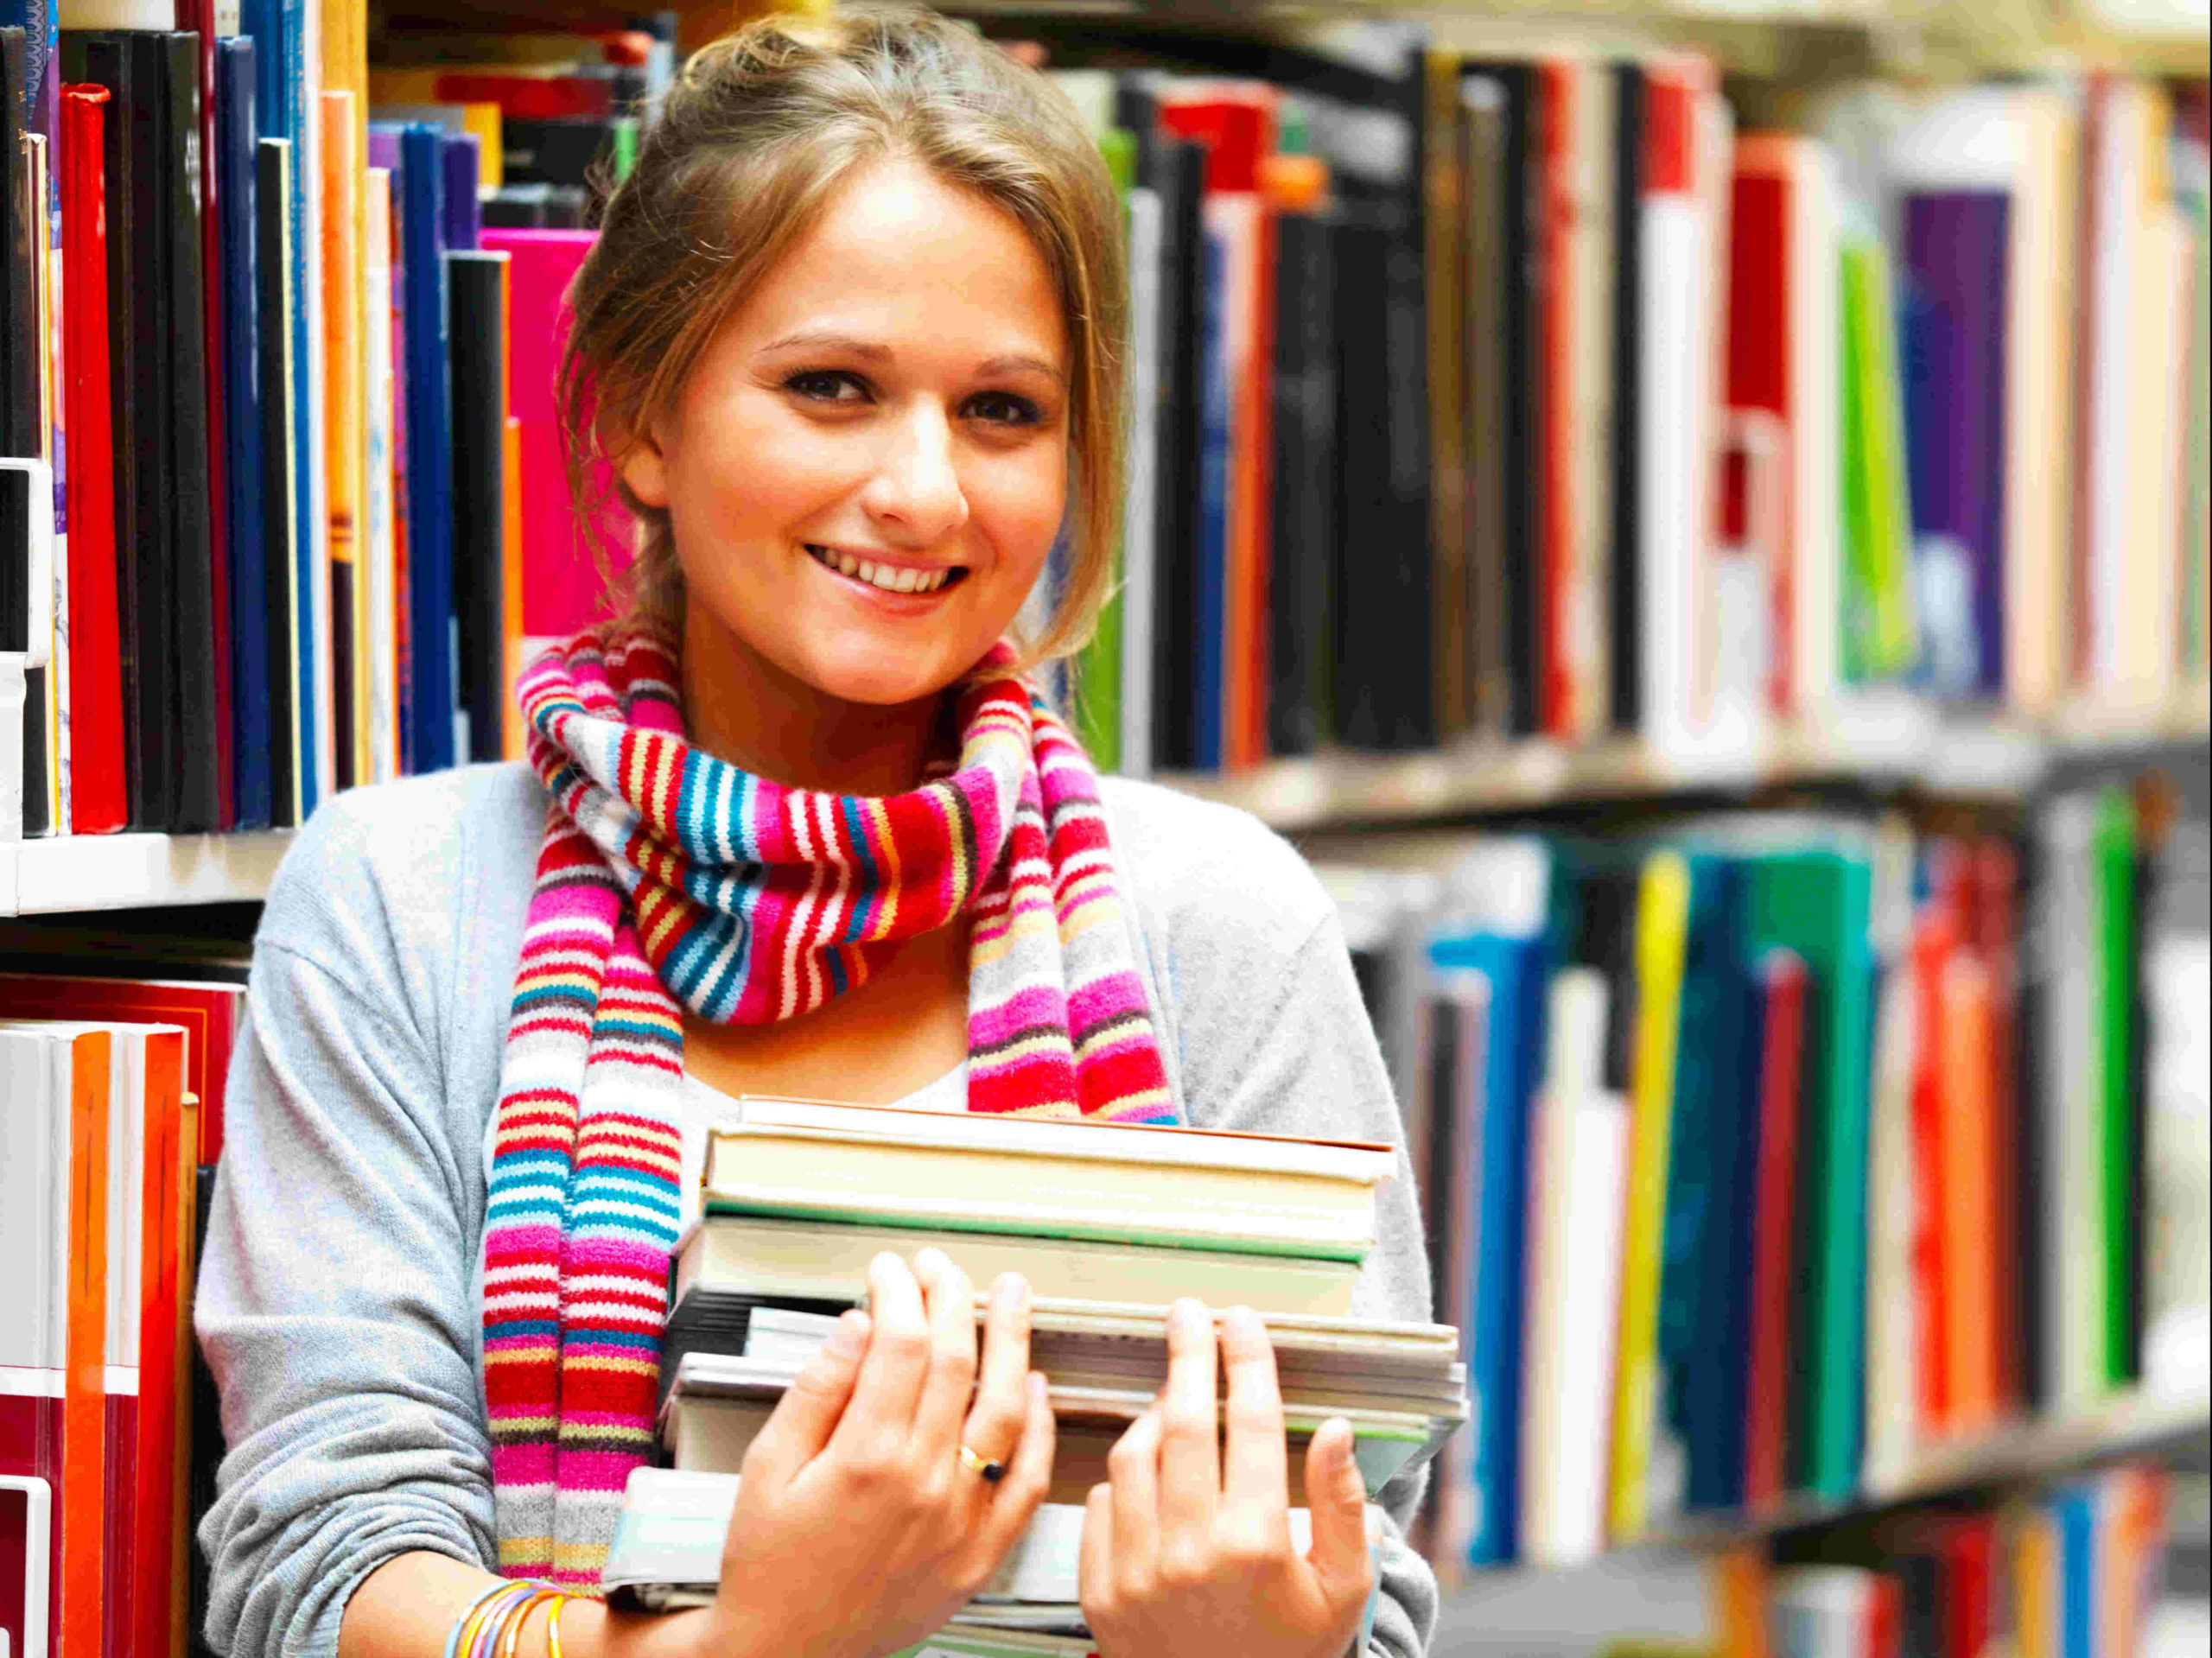 Małoda kobieta ze stosem książek w rękach w bibliotece.